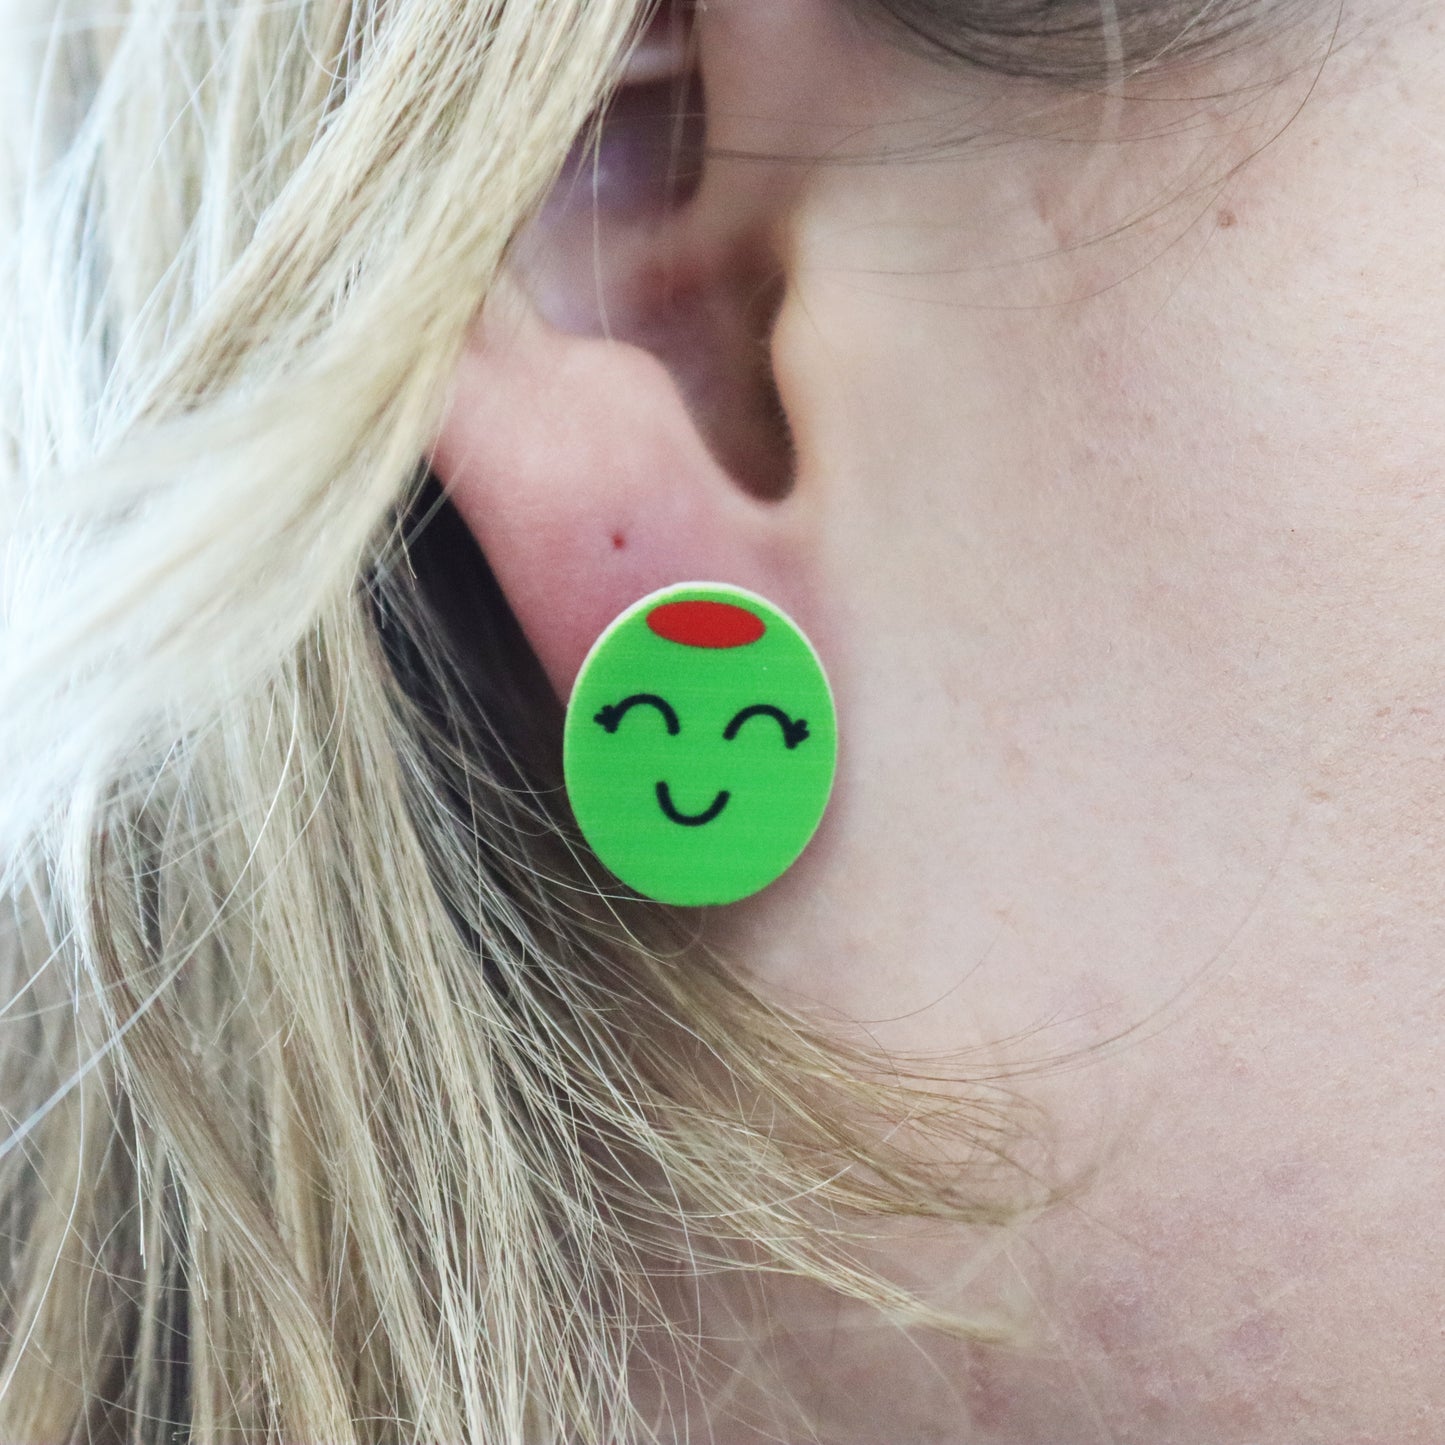 olive stud earring shown in ear